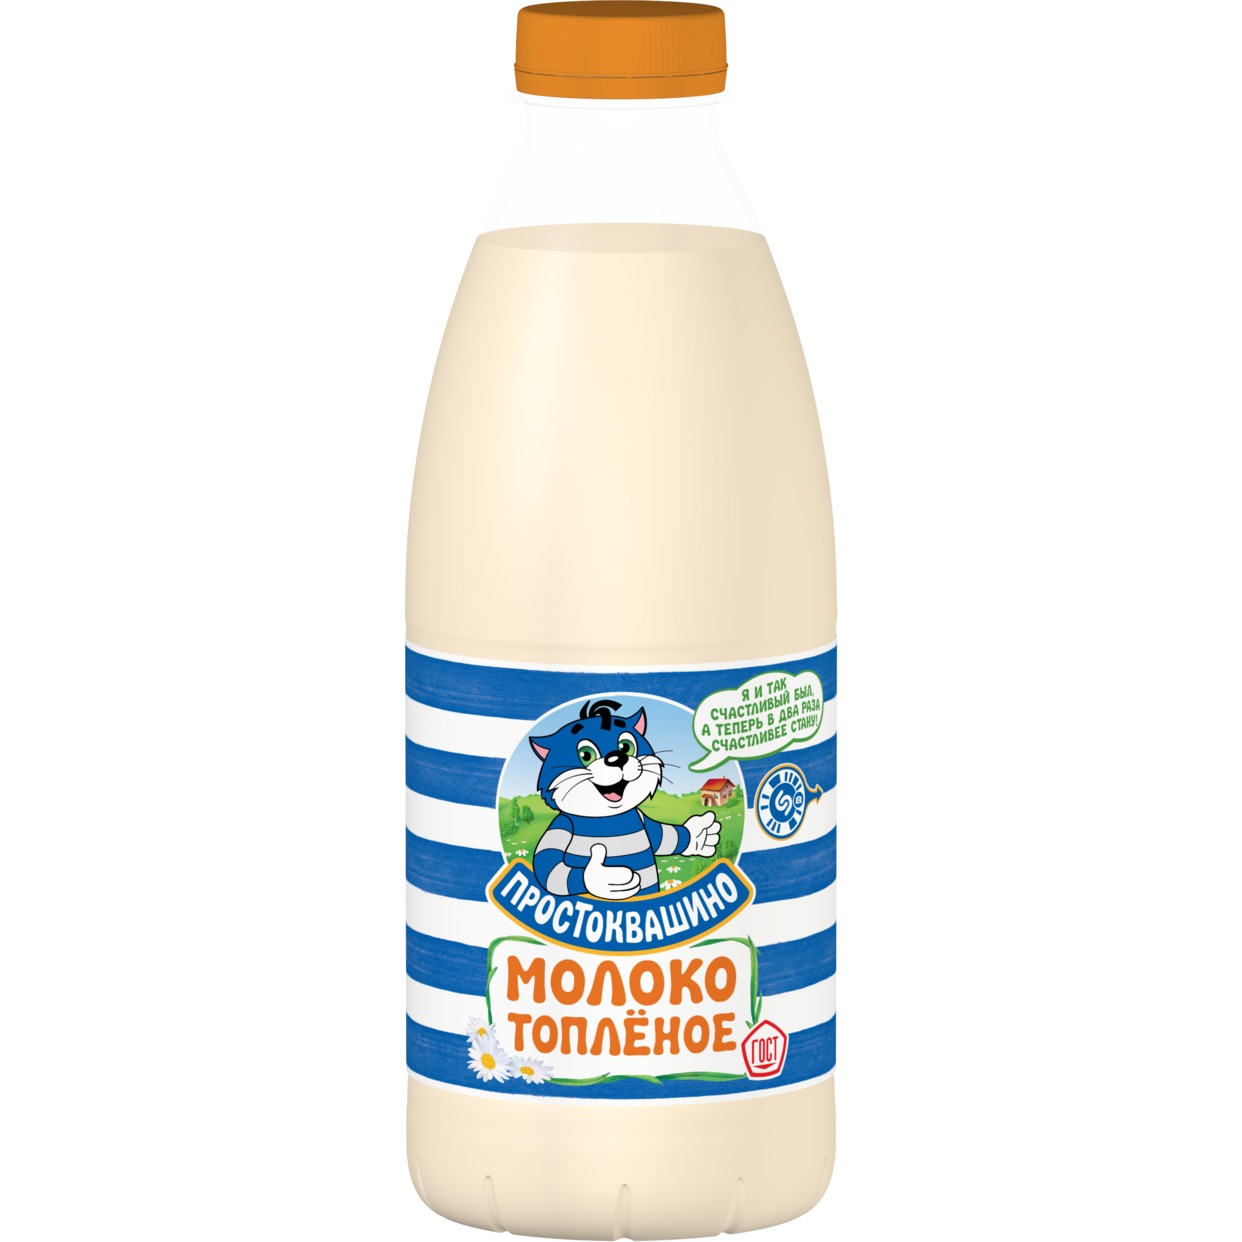 ПРОСТОКВ.Молоко топленое 3,2% 930г по акции в Пятерочке